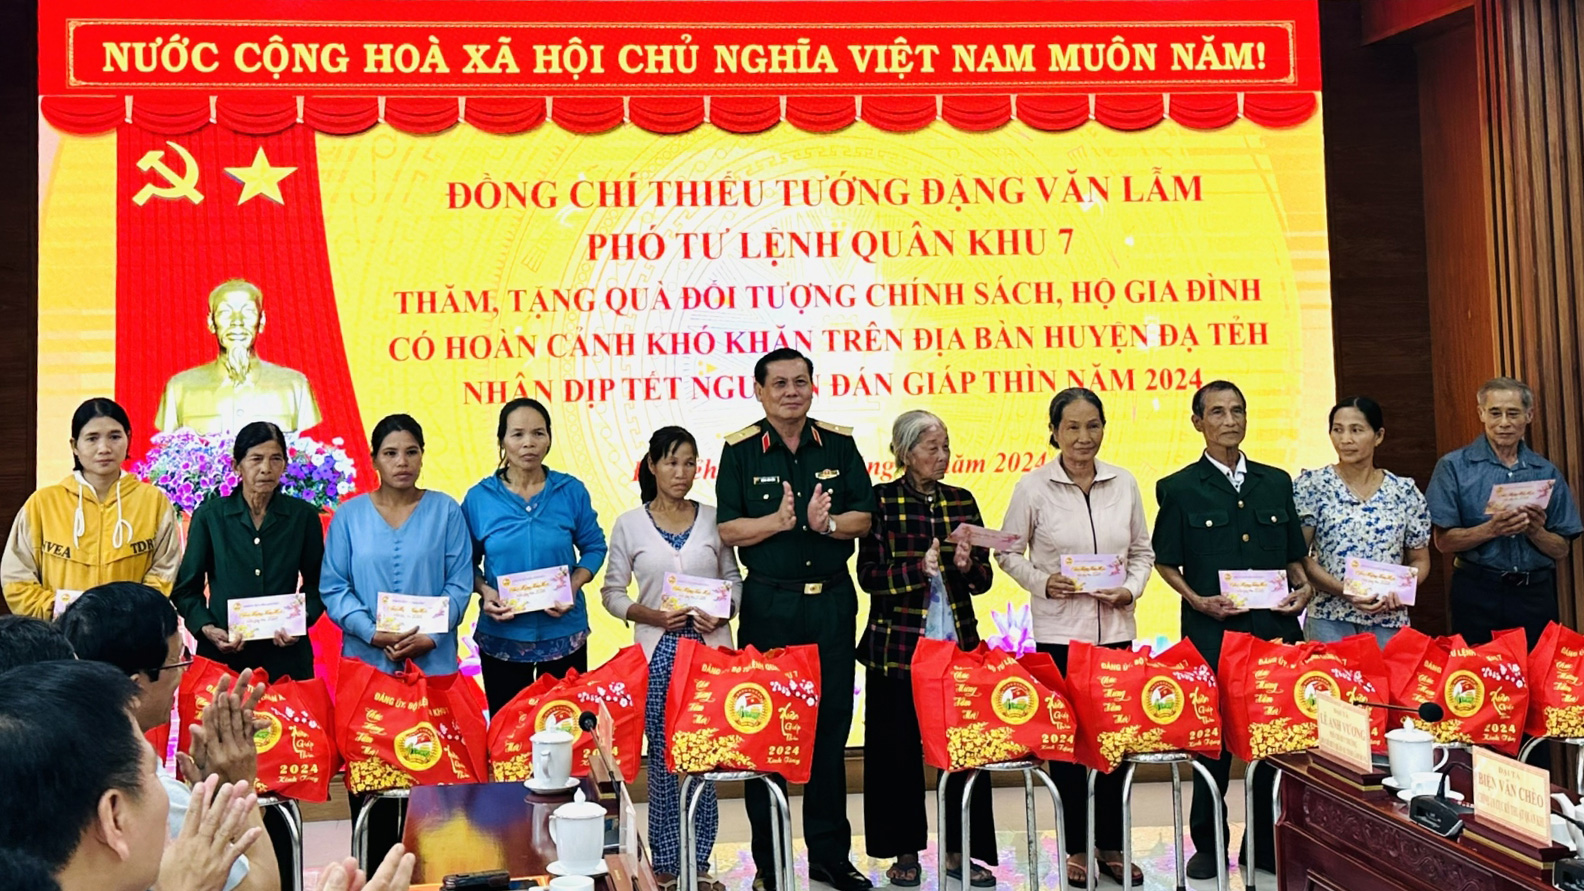 Bộ Tư lệnh Quân khu 7, Thiếu tướng Đặng Văn Lâm đã thăm hỏi và trao tặng 20 suất quà cho các gia đình chính sách, hộ nghèo trên địa bàn huyện